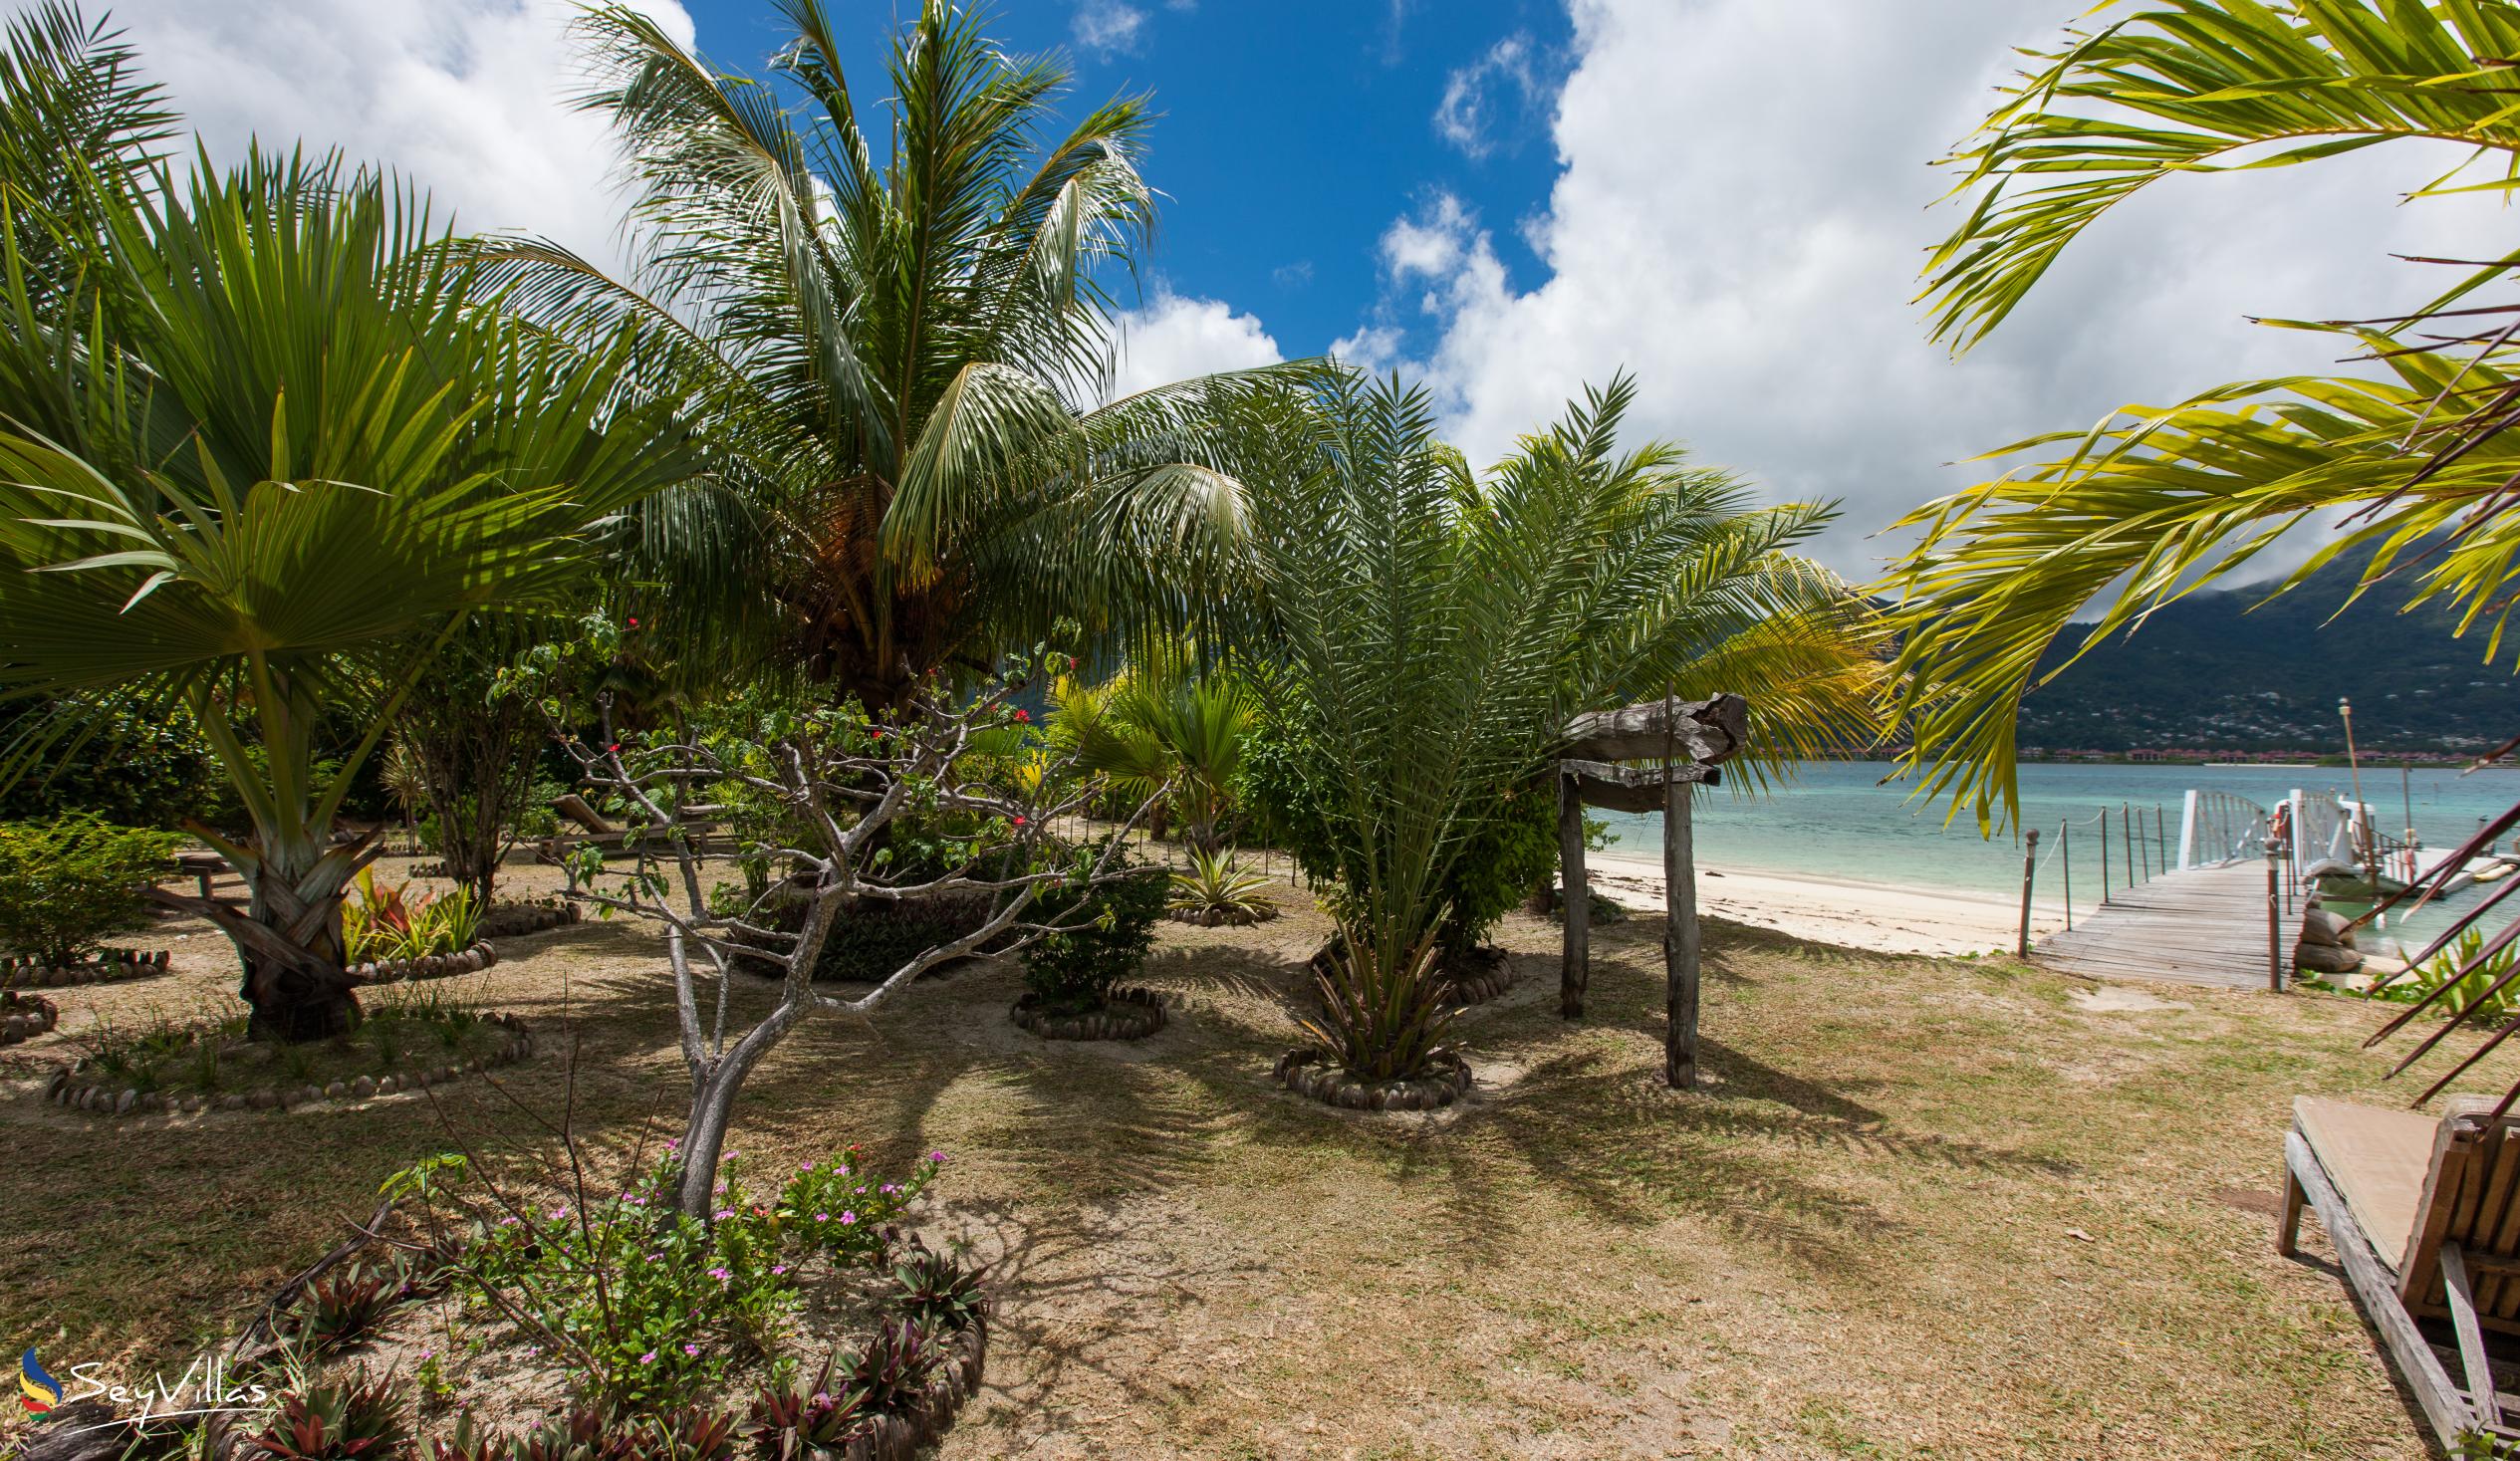 Foto 14: Villa de Cerf - Esterno - Cerf Island (Seychelles)